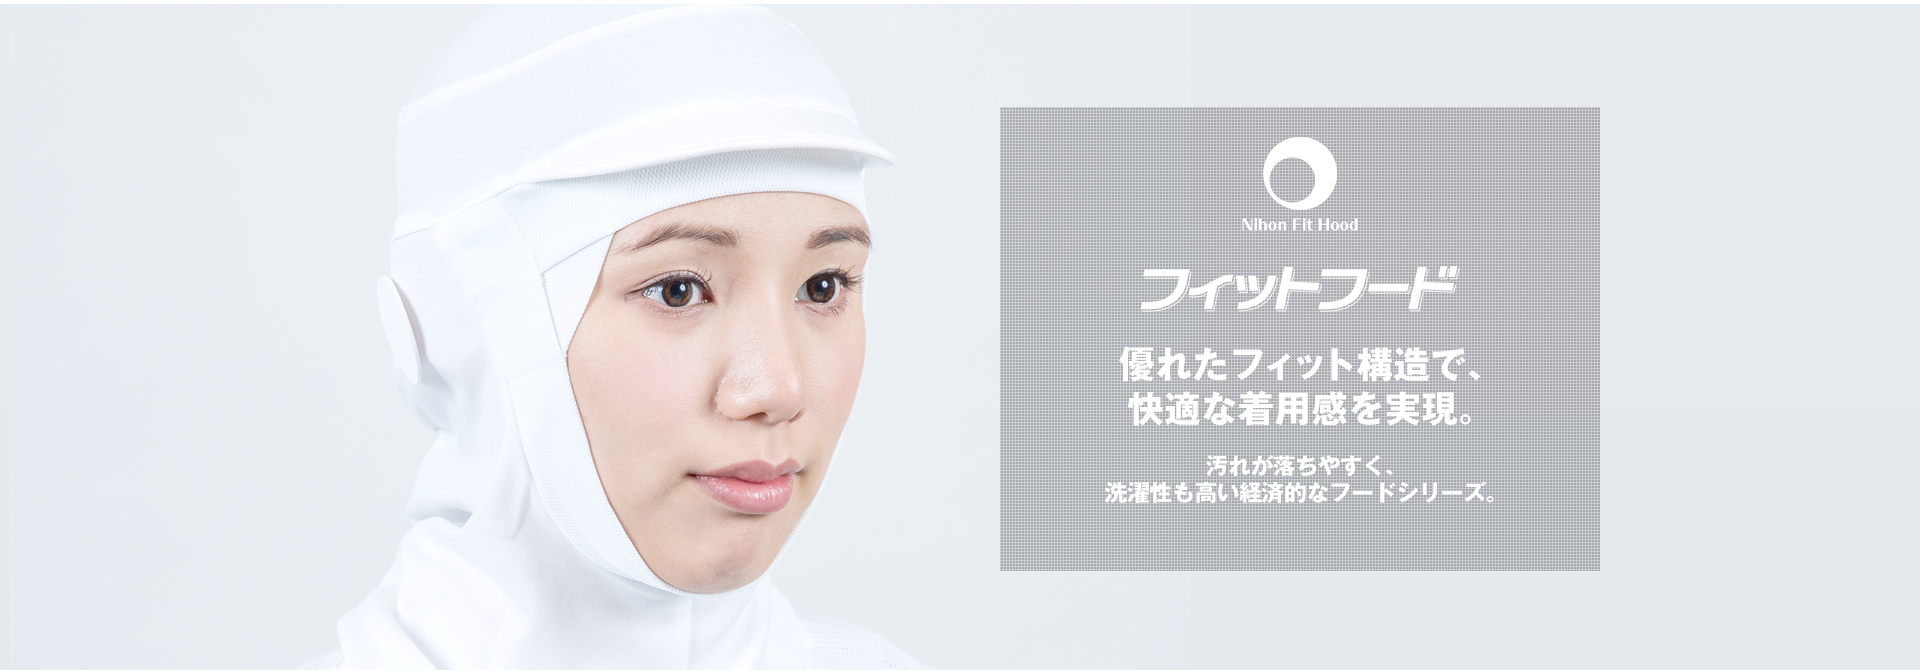 セール特価 店日本フィットフード インナーネット FHI-710 S〜L 全3色 ブル- グリーン ピンク 200枚入 食品工場 